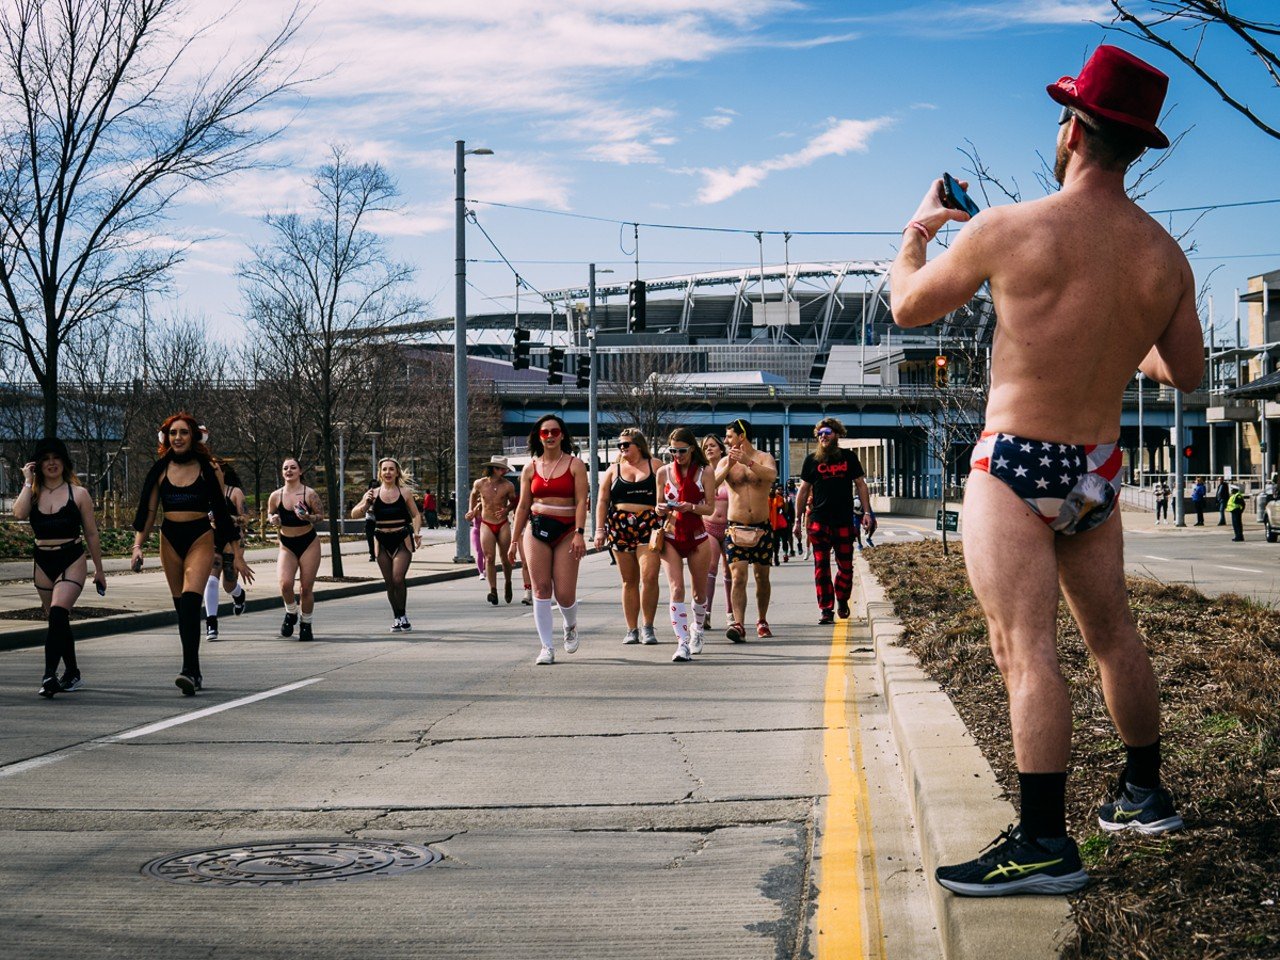 Detroiters strip down for Cupid's Undie Run [NSFW PHOTOS]